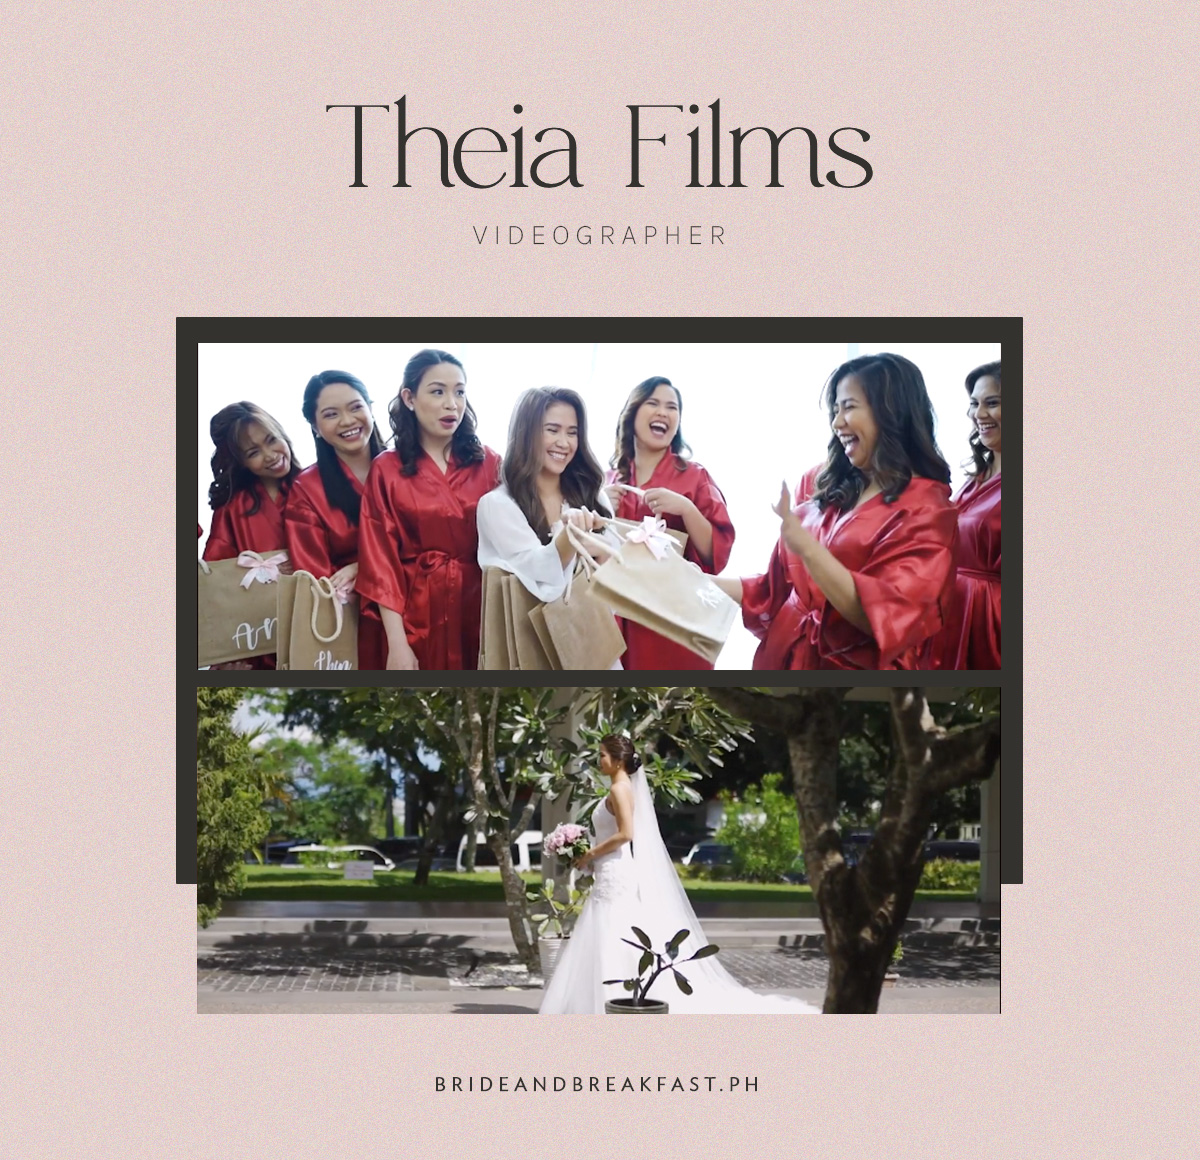 Theia Films